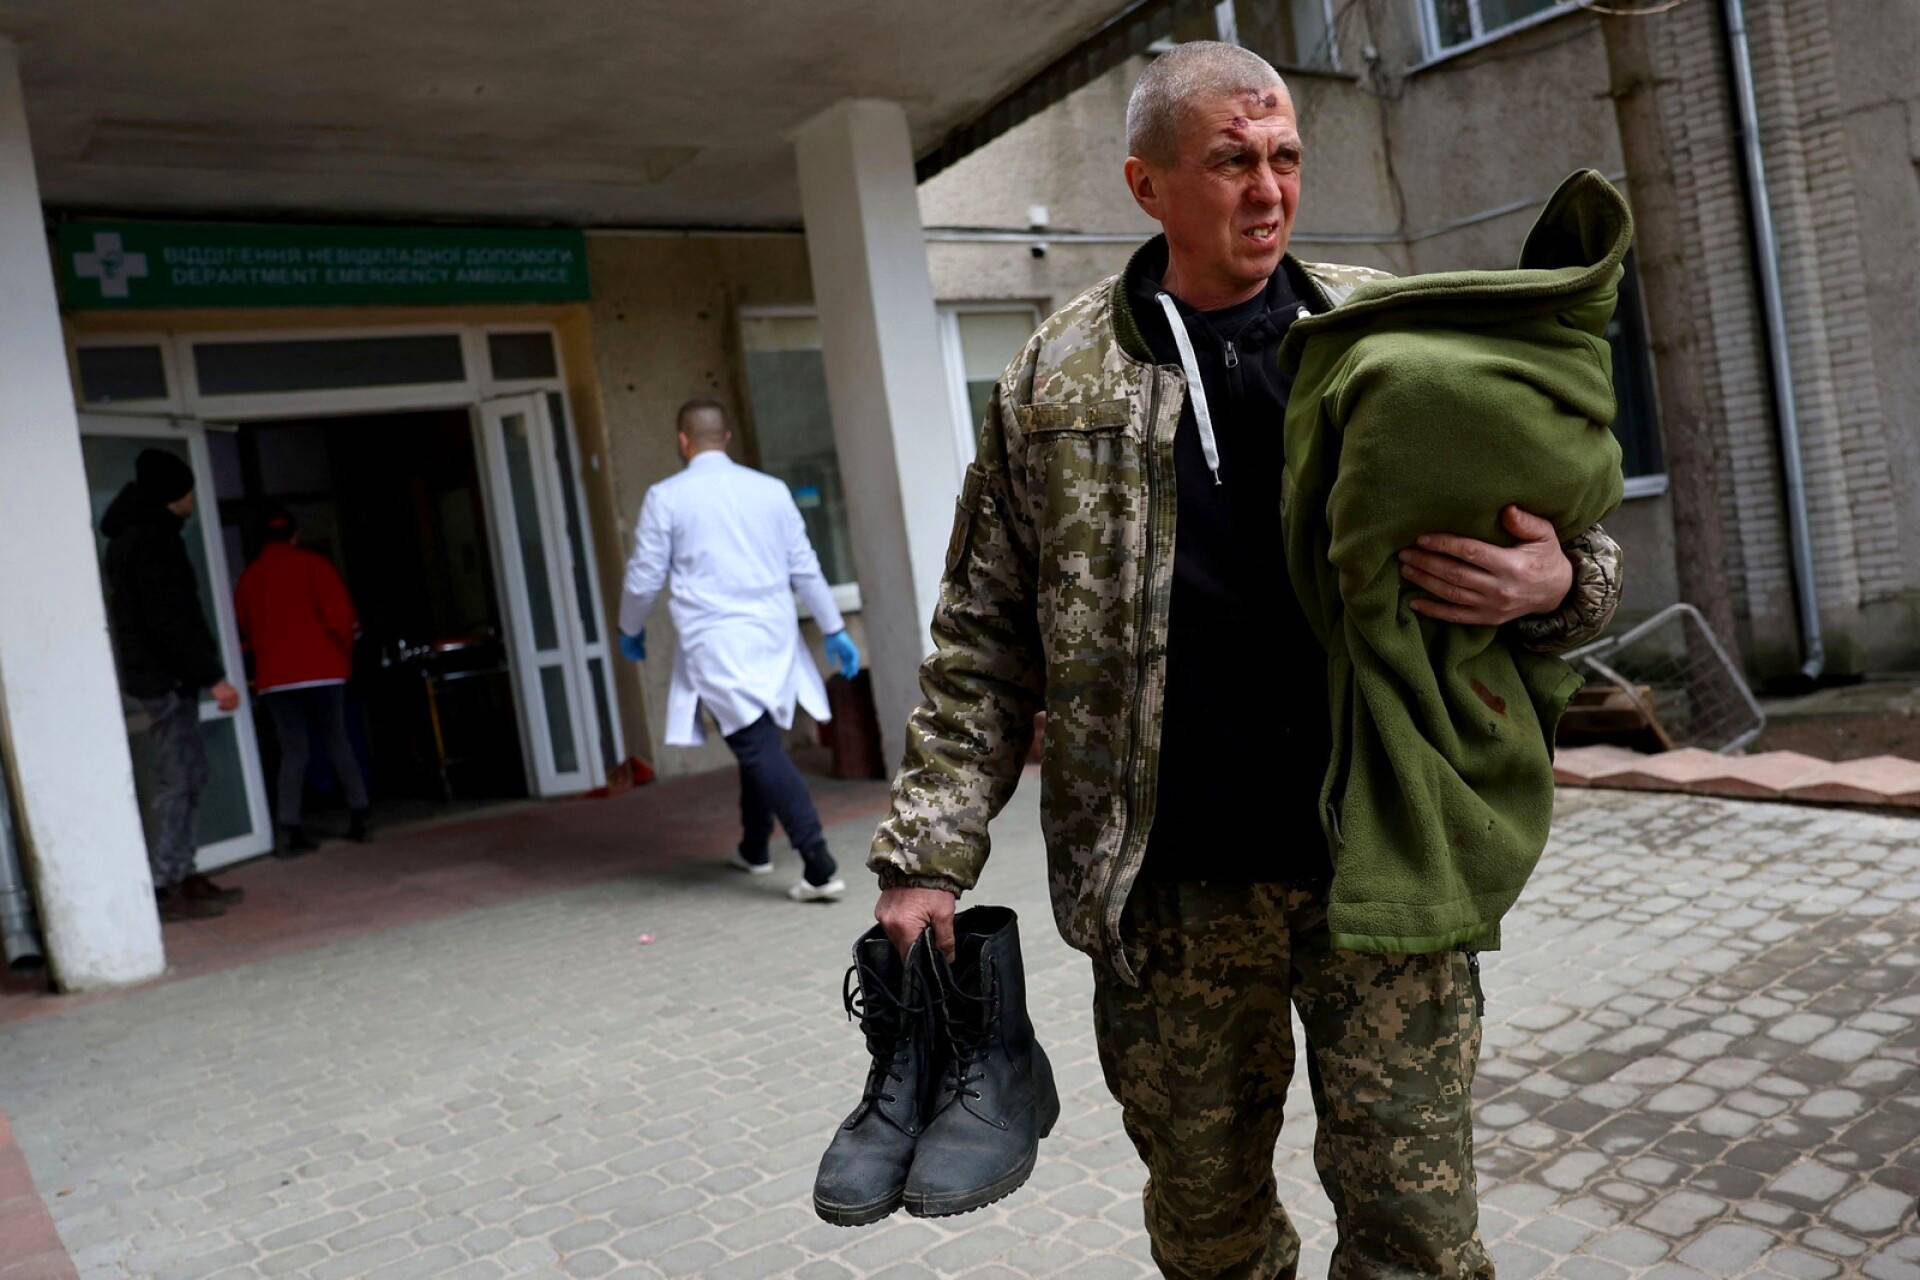 Javorivin iskussa haavoittui useita ja menehtyi 35. Iskussa loukkaantunut sotilas pääsi sairaalasta vielä samana päivänä pois.